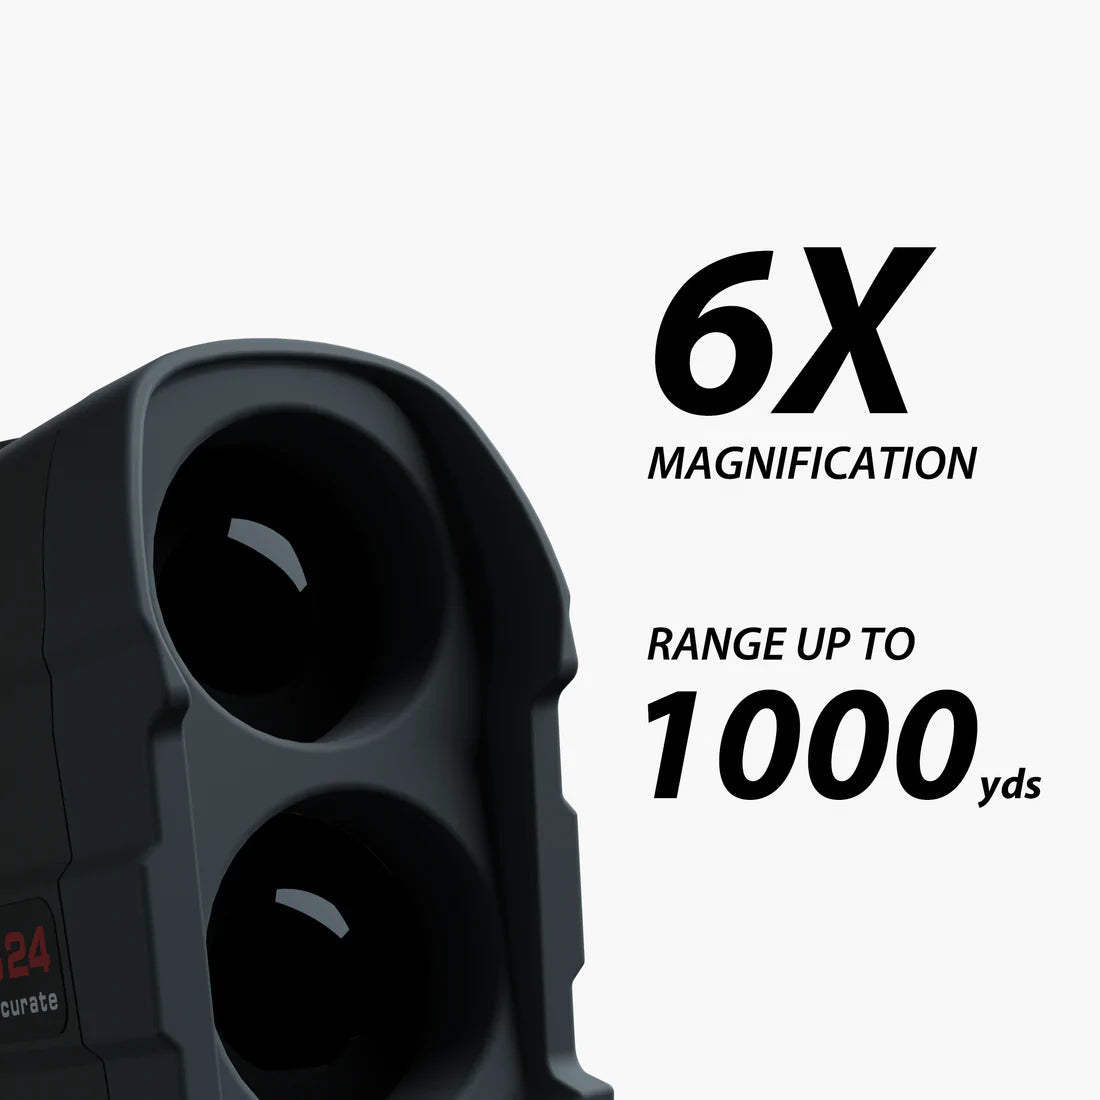 Gogogo Sport Vpro Laser Golf Rangefinder 650 Yards Range Finder Distance  Measuring with Flag Lock GS24 